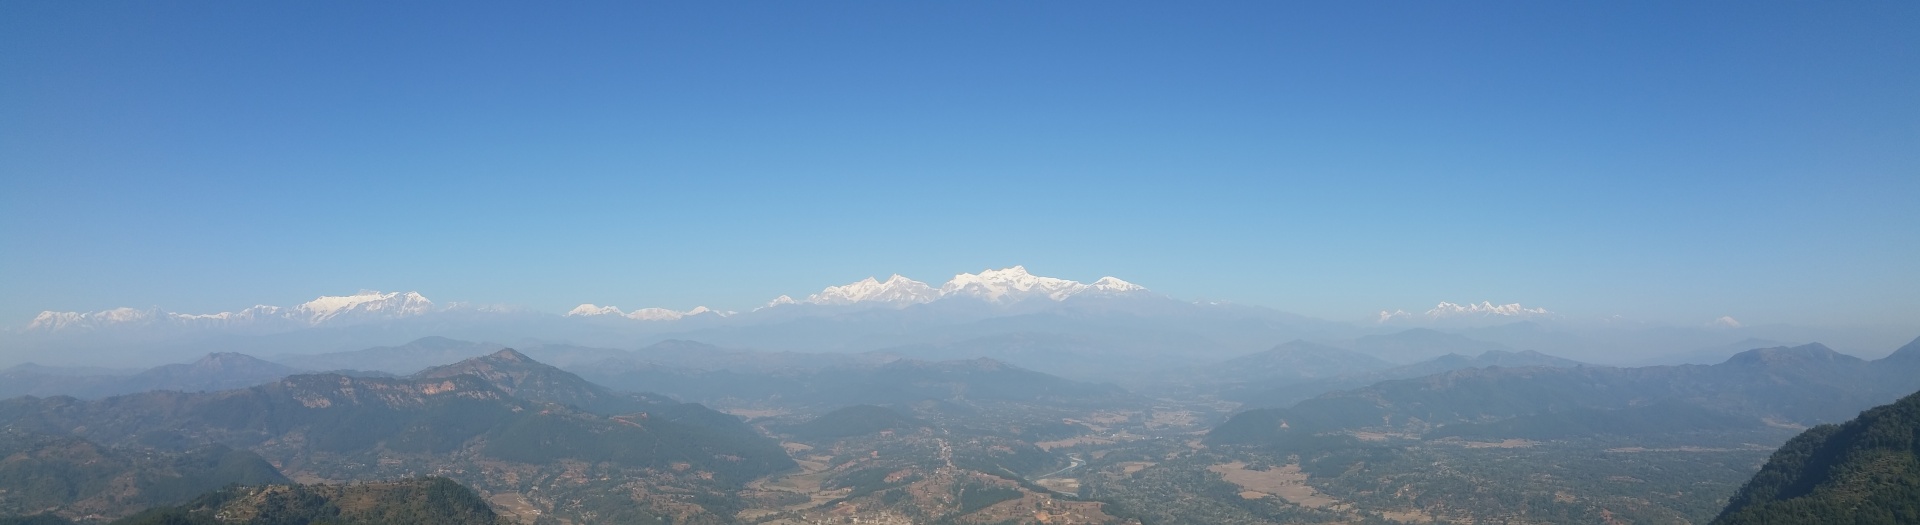 Namaste Nepal: Kathmandu, Annapurnas and the Teraï